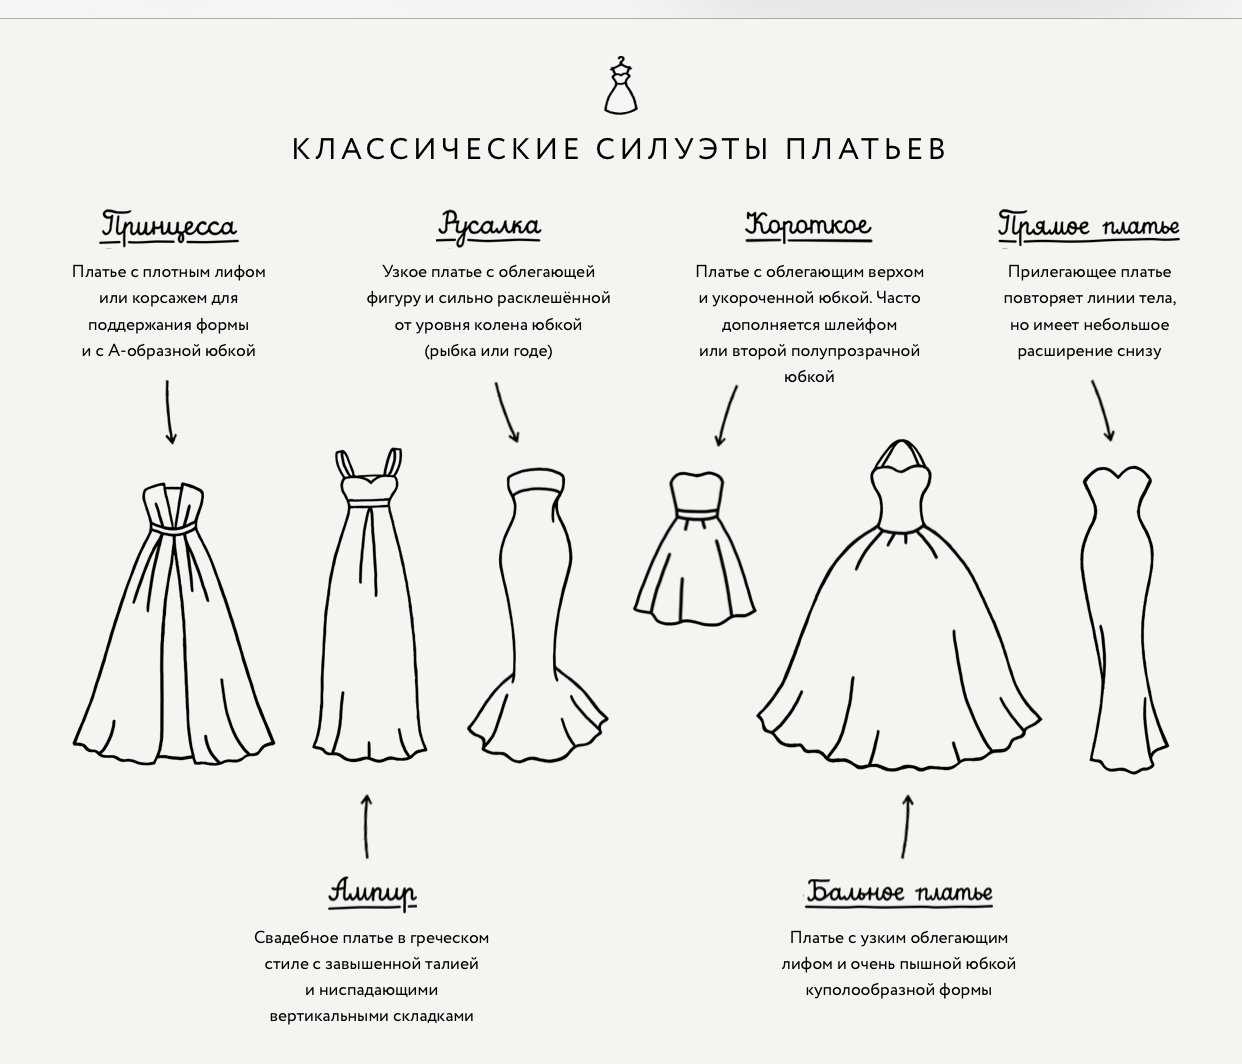 Модели платьев и их названия